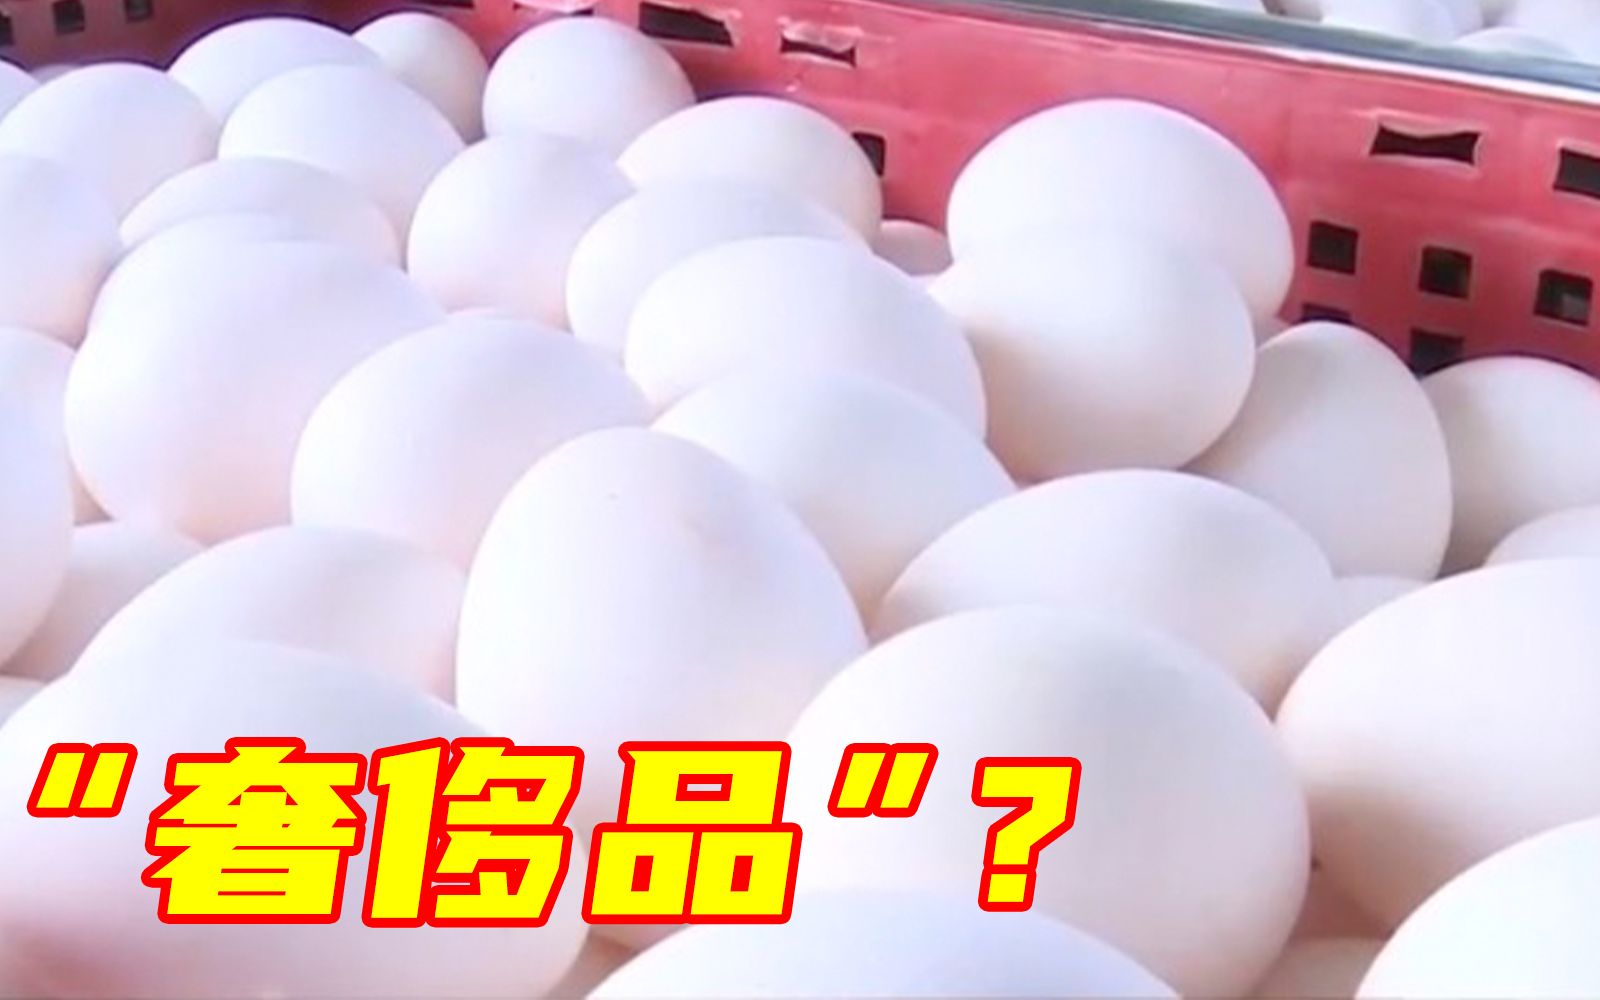 一颗鸡蛋加价15元新台币以上，台湾民众很不满